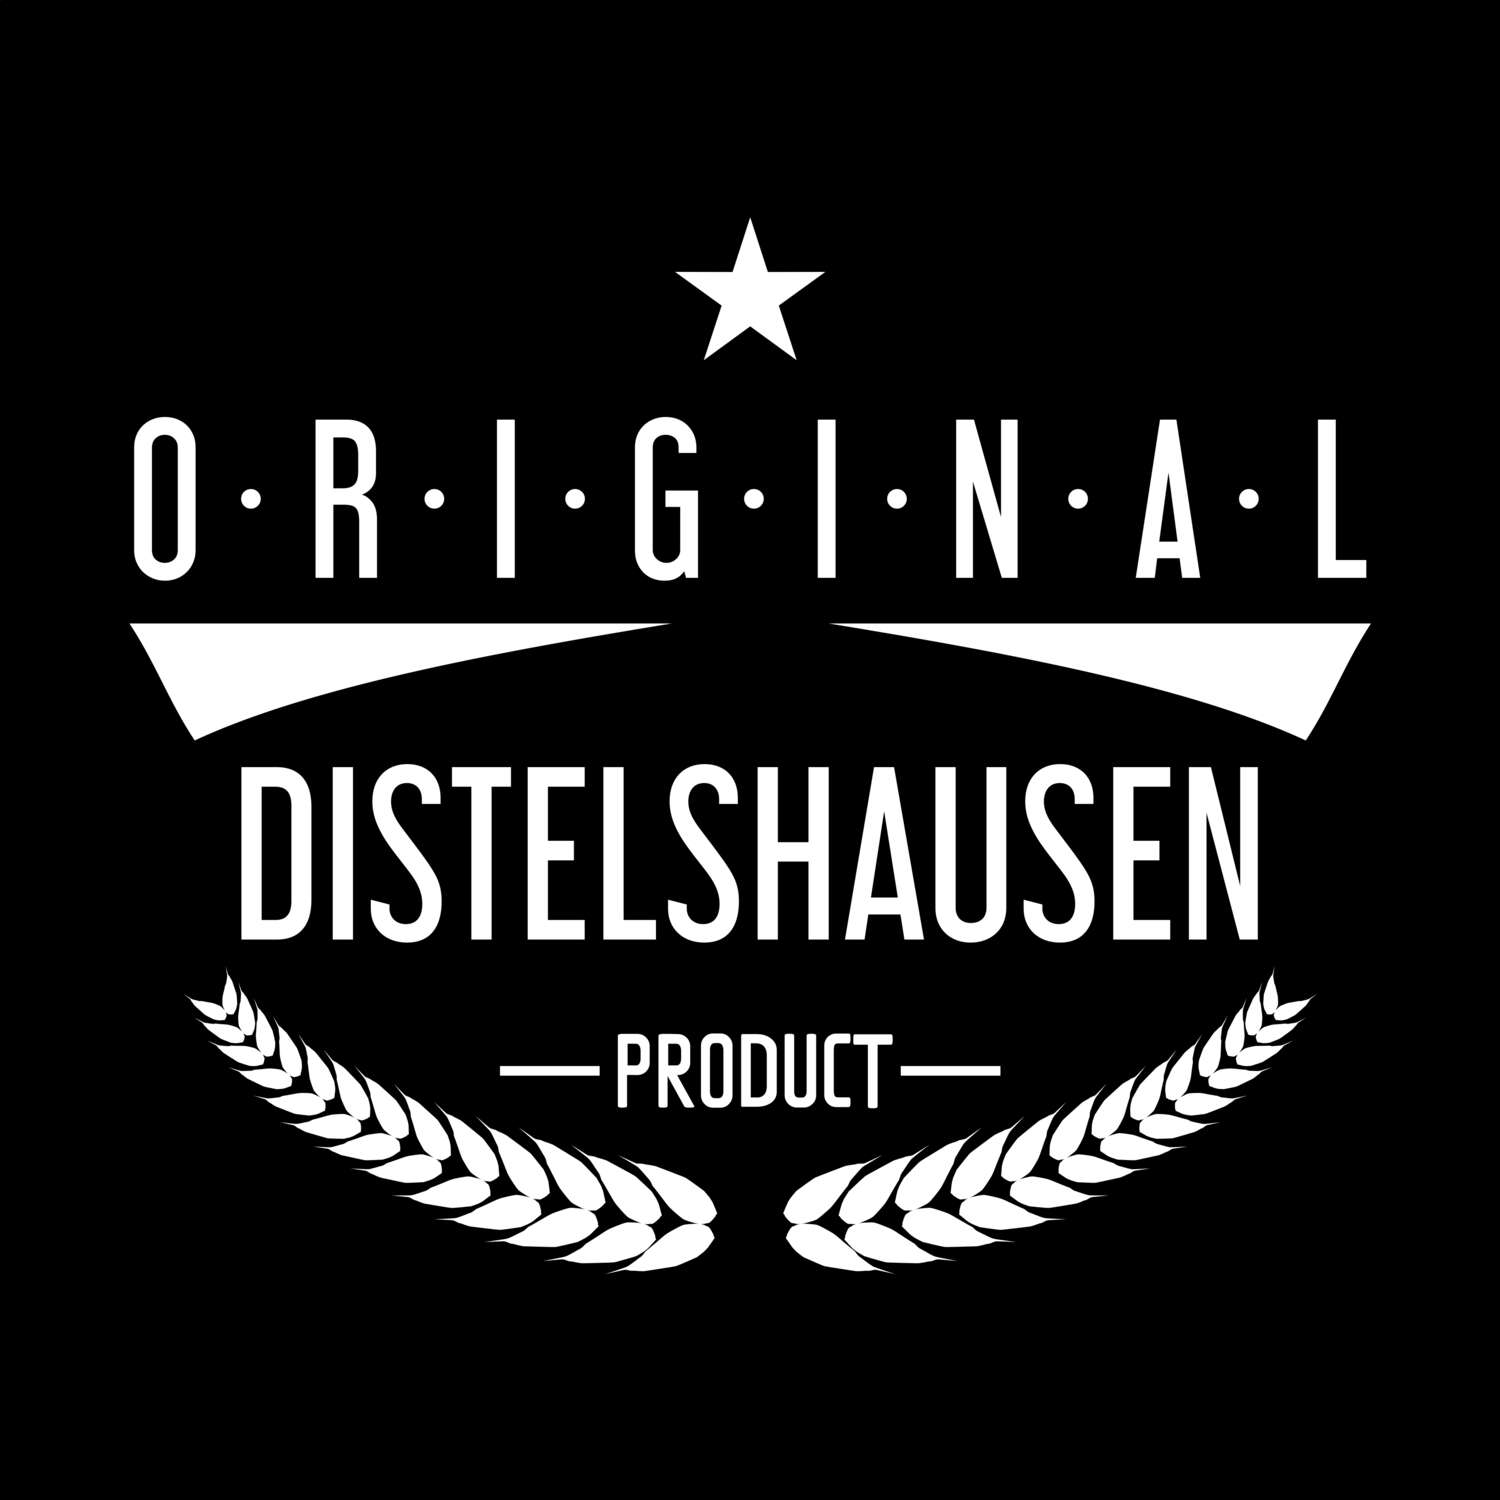 Distelshausen T-Shirt »Original Product«